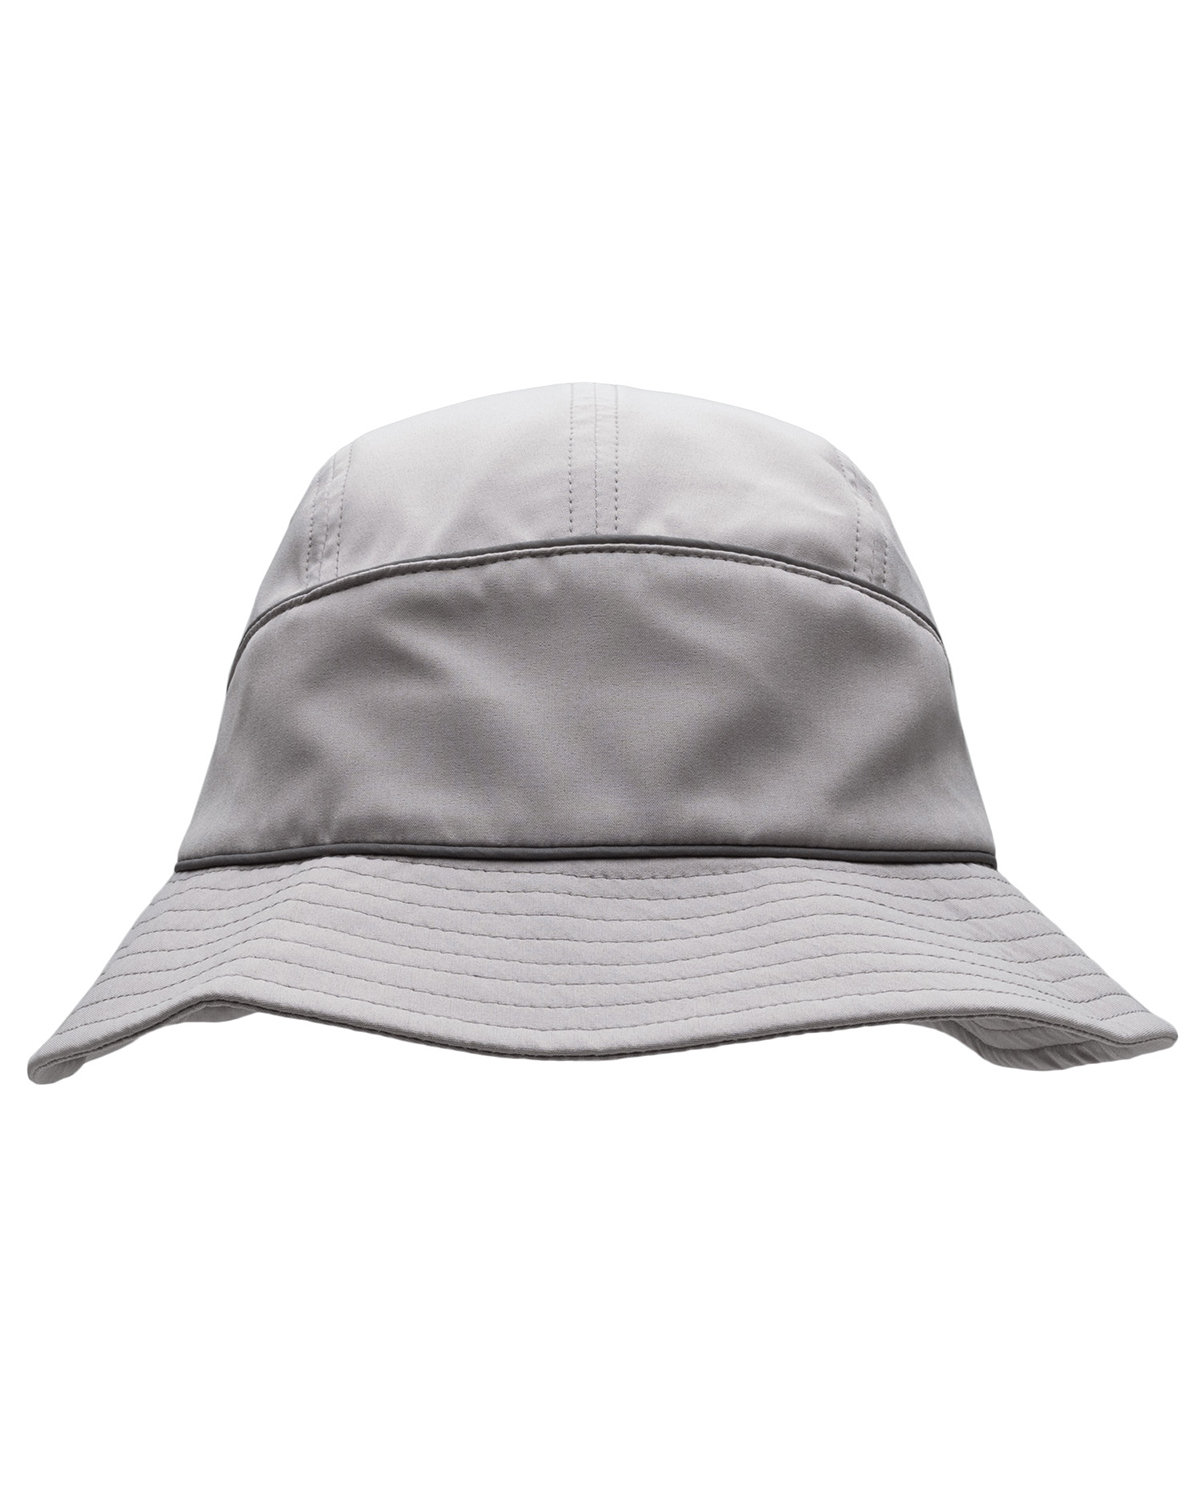 Strider Bucket Hat-Headsweats